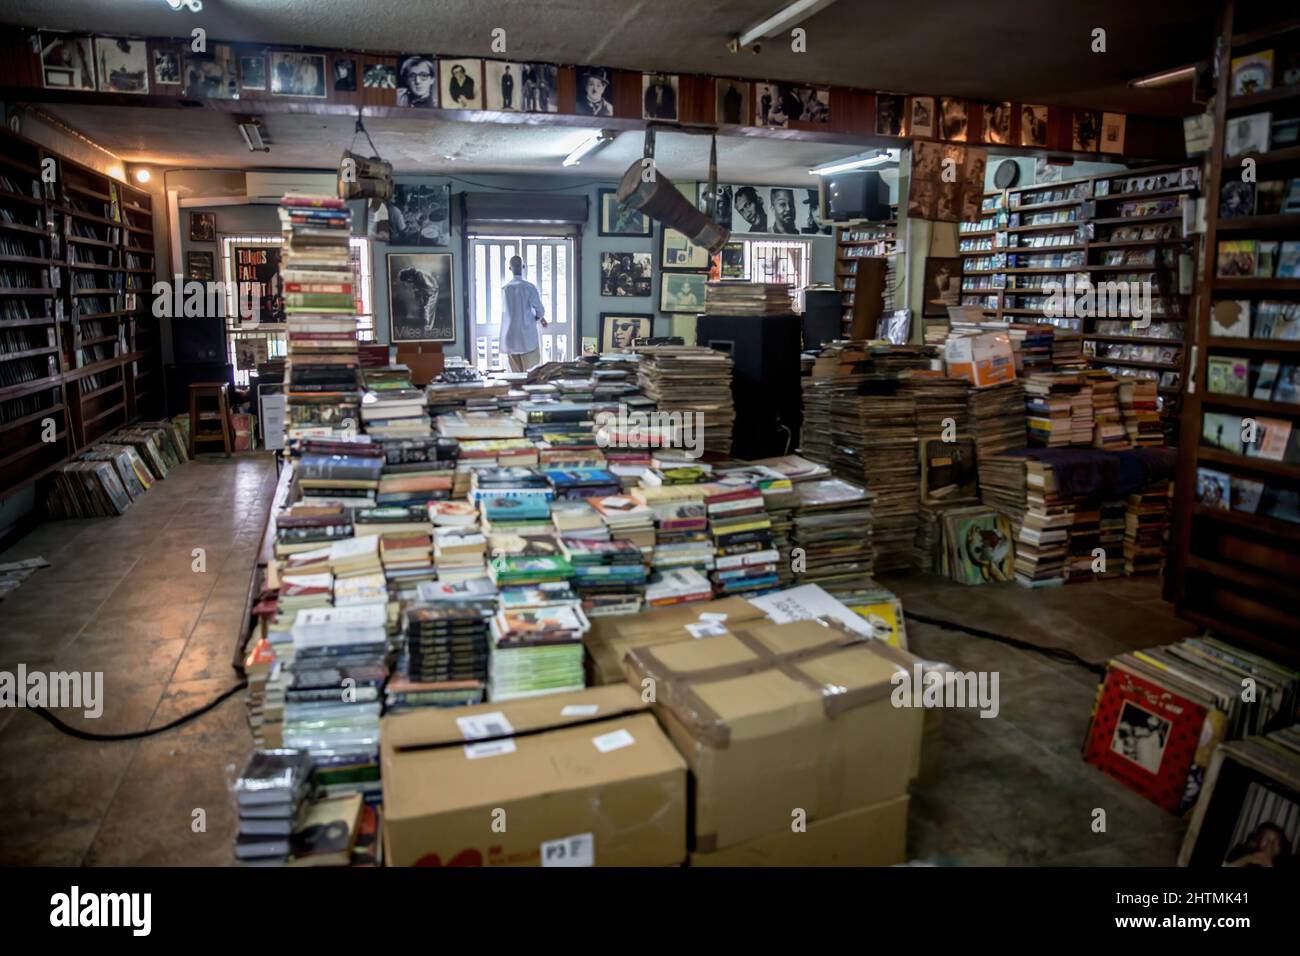 Lagos, Nigéria. 21st novembre 2021. L'intérieur du Jazzhole, un légendaire magasin de livres et de disques de Lagos vu comme des auteurs nigérians, connaît actuellement un succès mondial important. (Image de crédit : © Sally Hayden/SOPA Images via ZUMA Press Wire) Banque D'Images